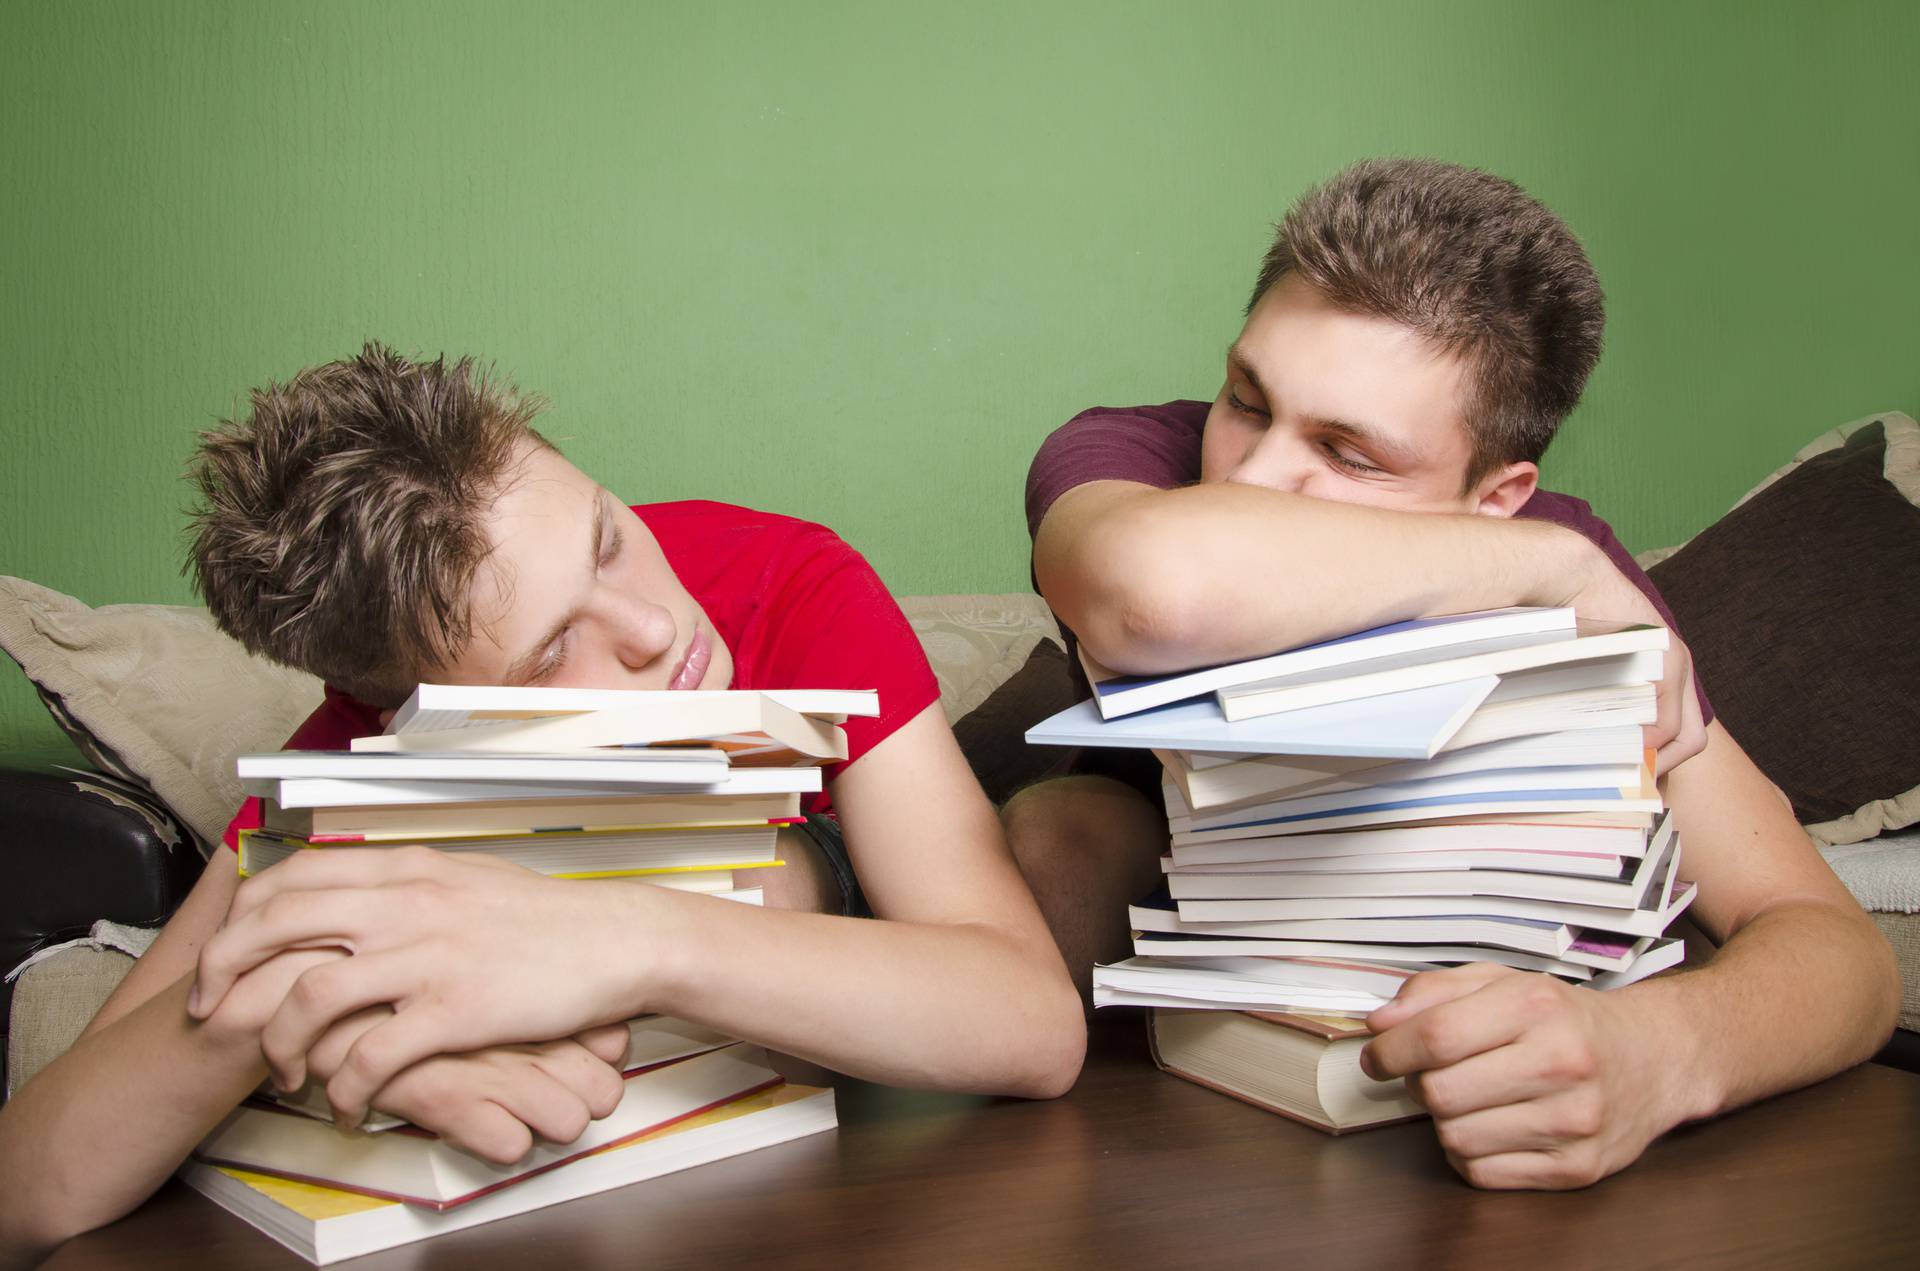 Stručnjaci napokon odgovorili na pitanje - je li popodnevni spavanac koristan ili štetan?